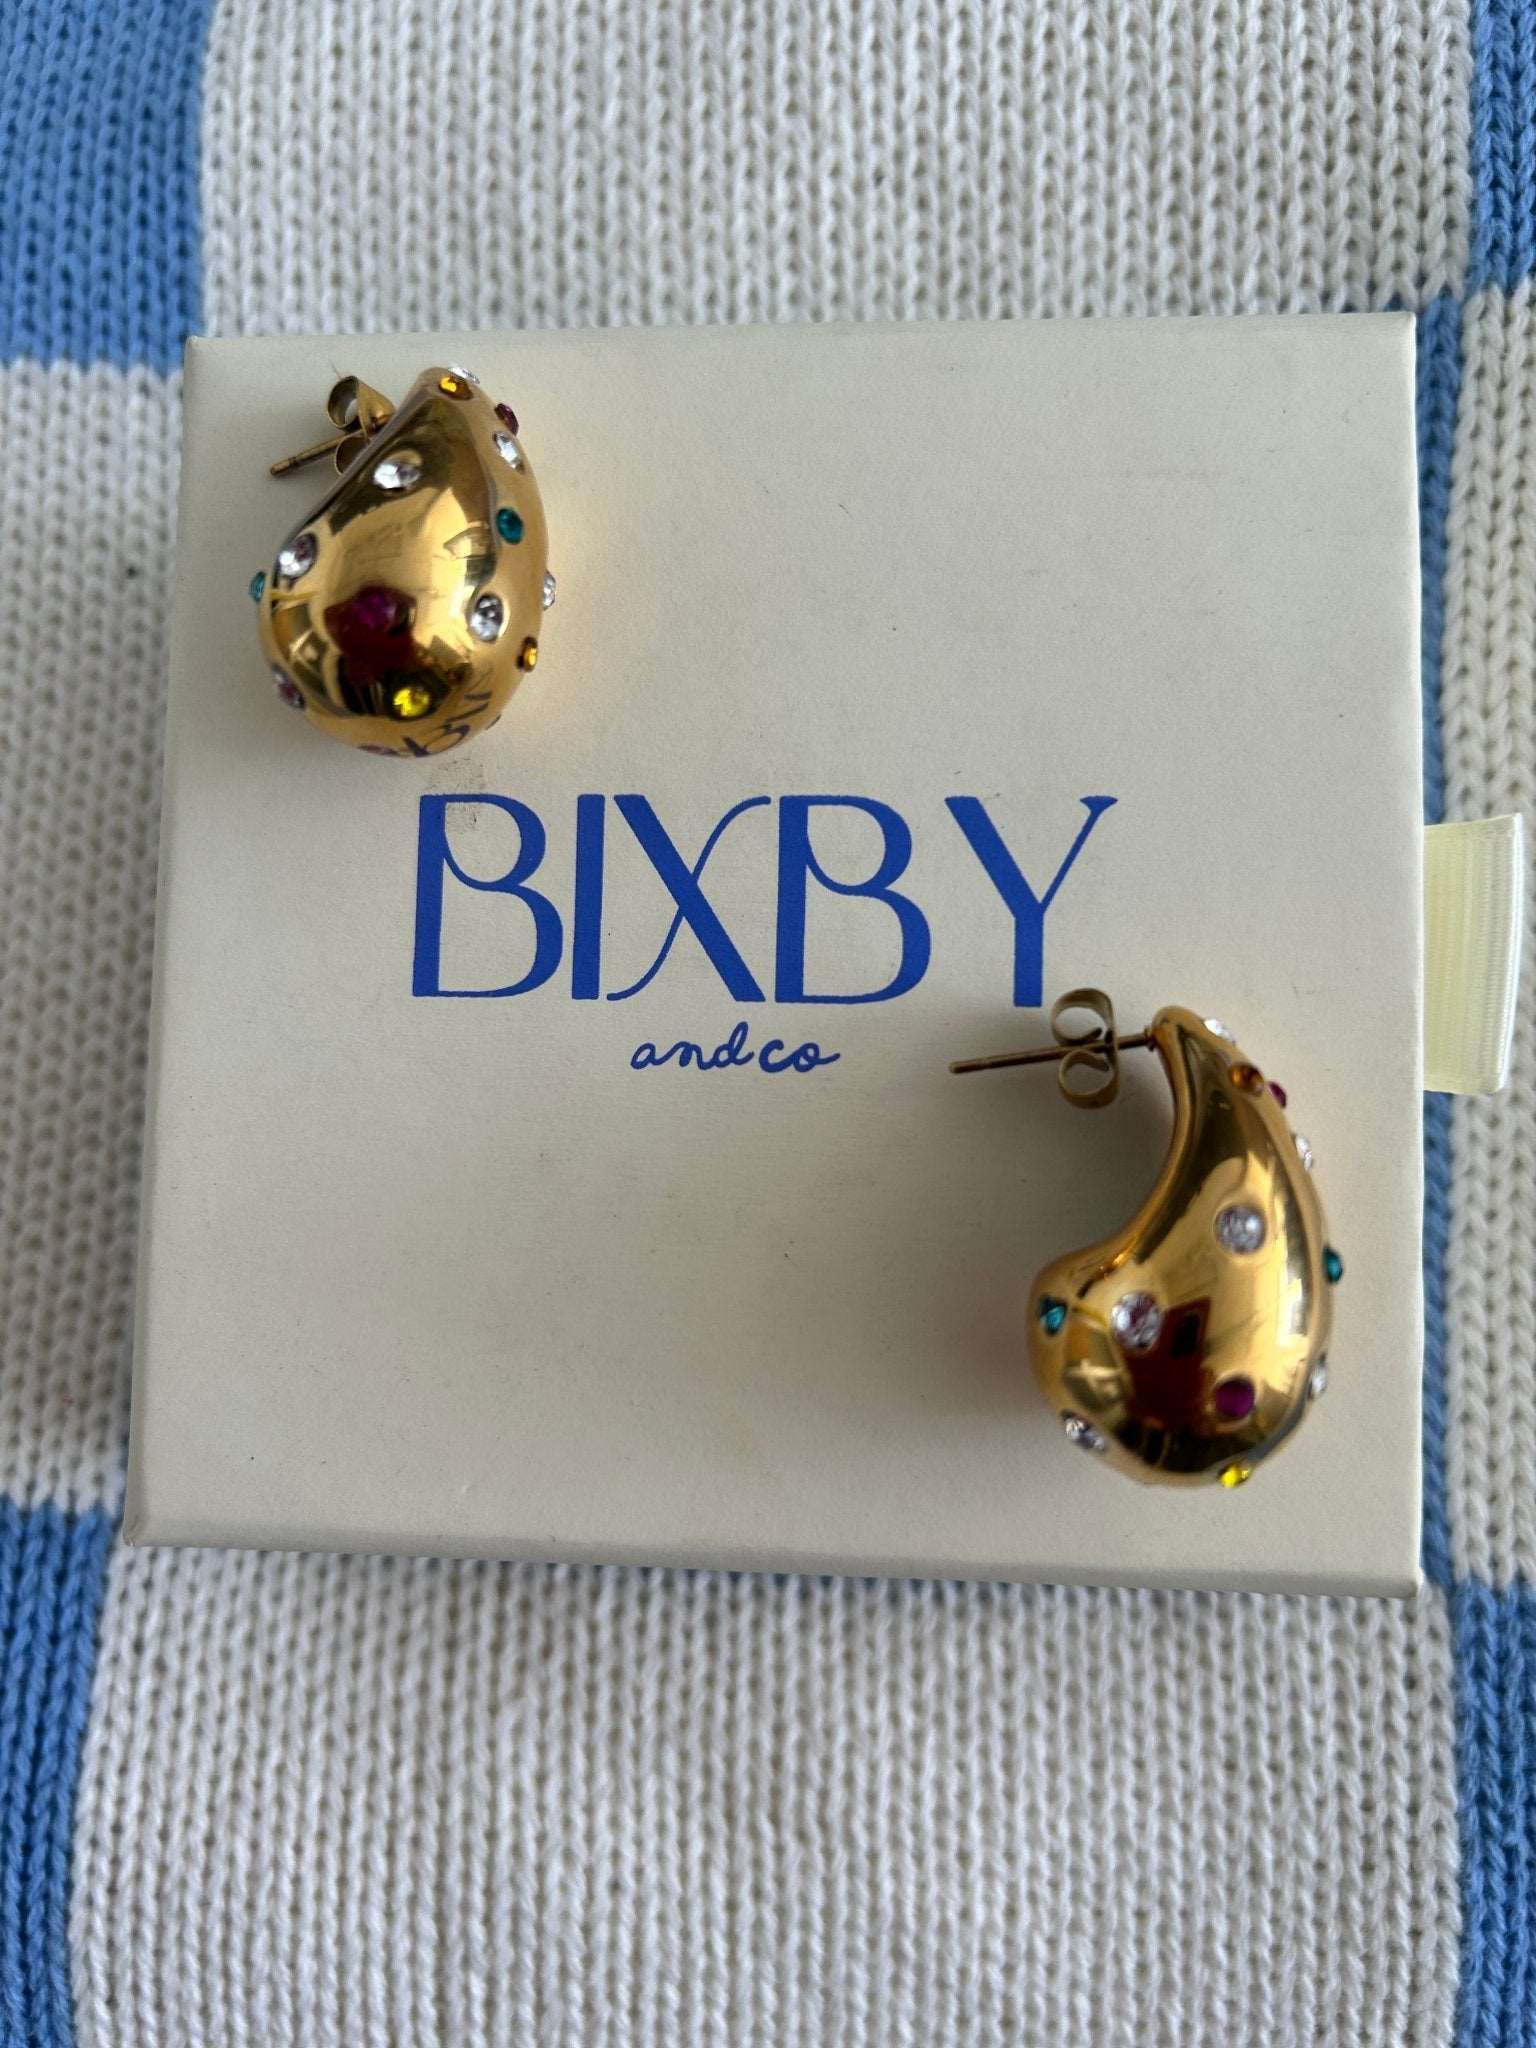 New Cosmo teardrop Bottega shape earrings on Bixby packaging